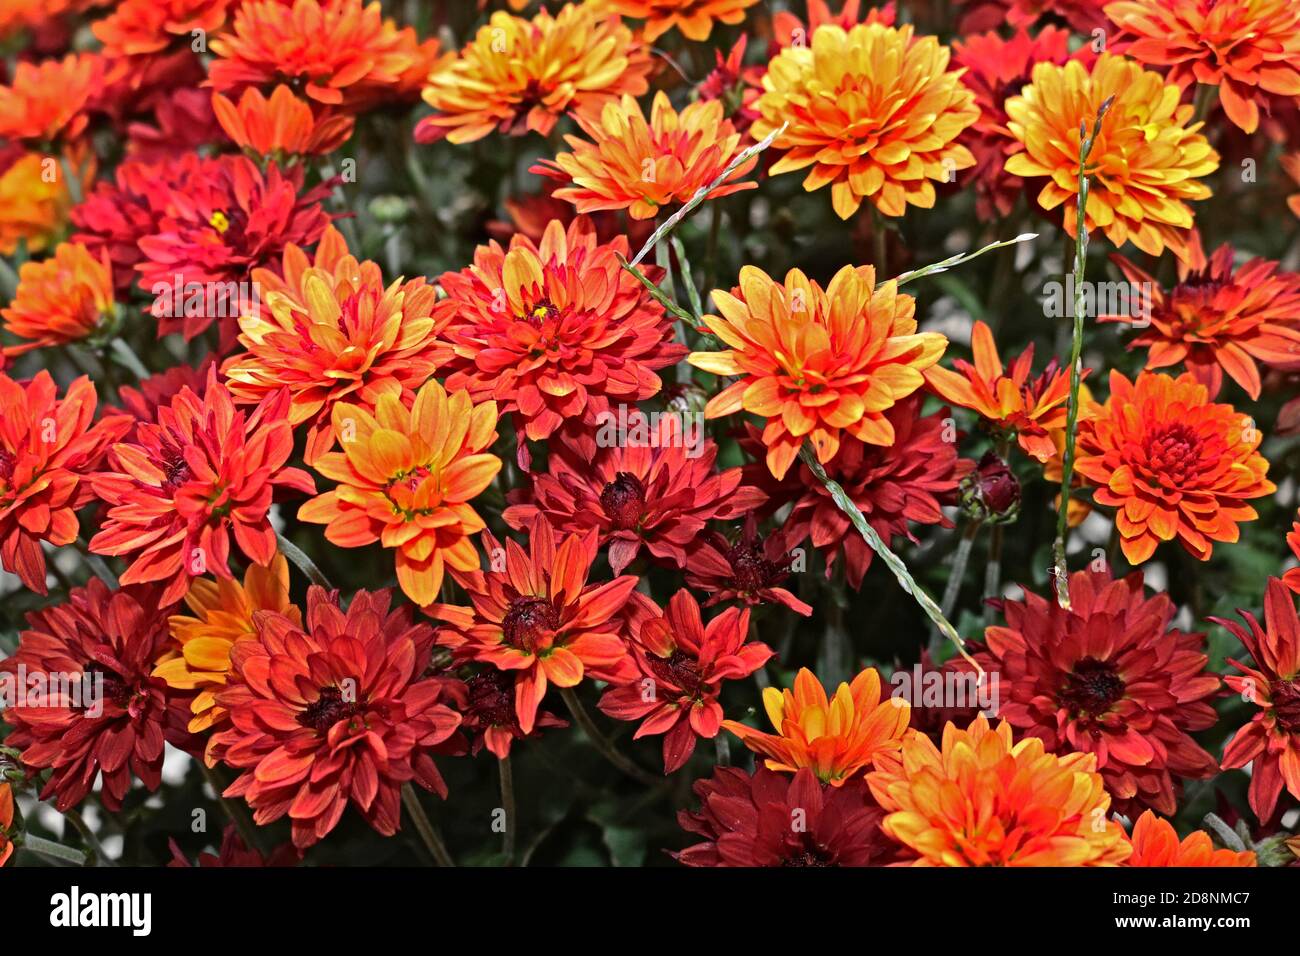 Autumn flowers Stock Photo